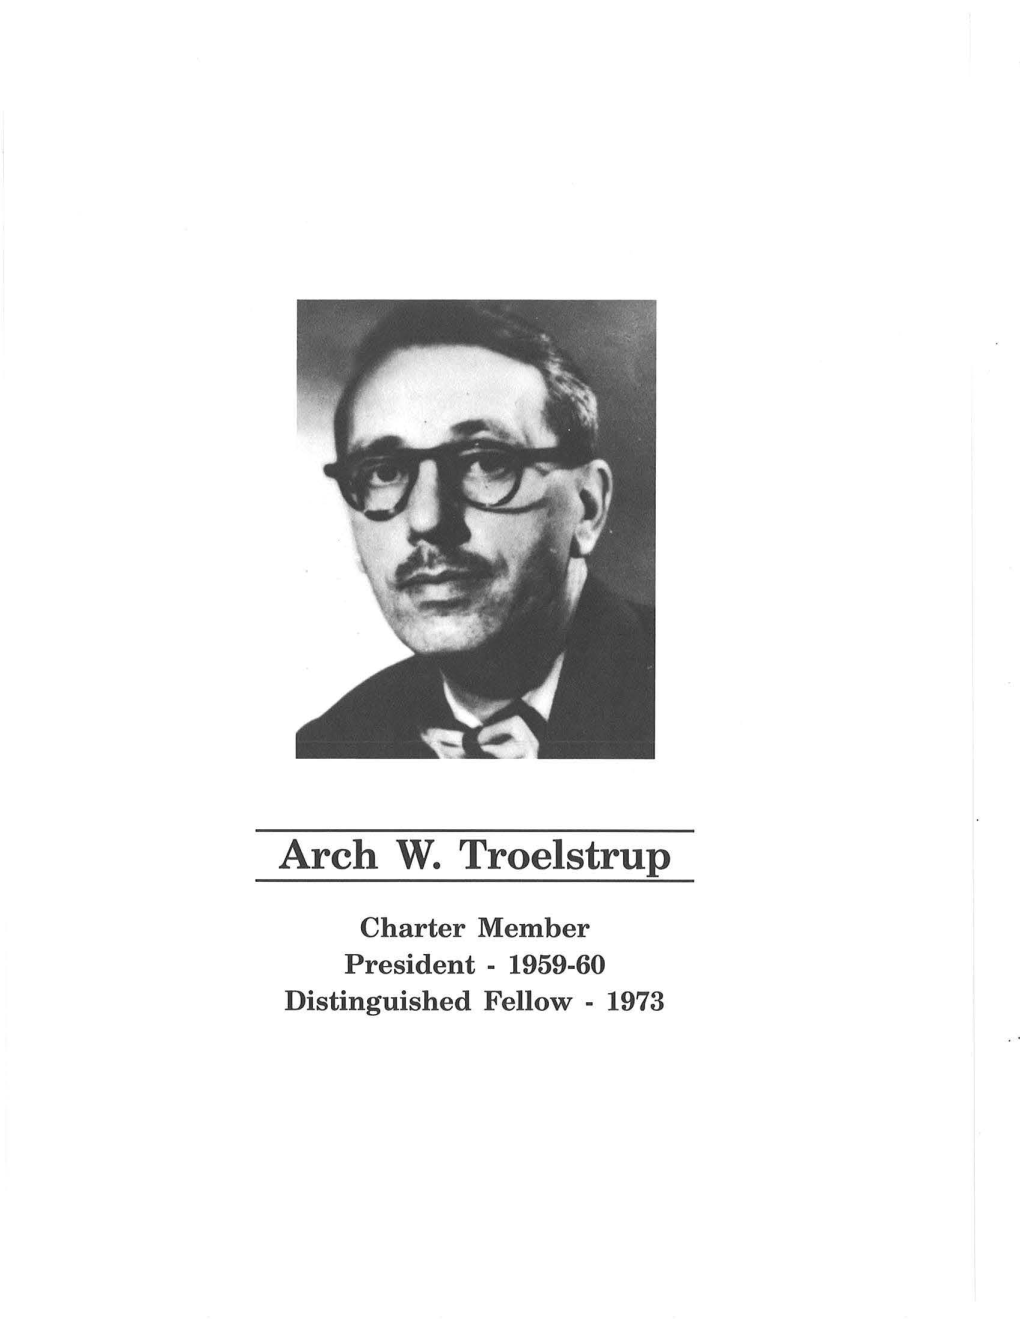 Arch W. Troelstrup